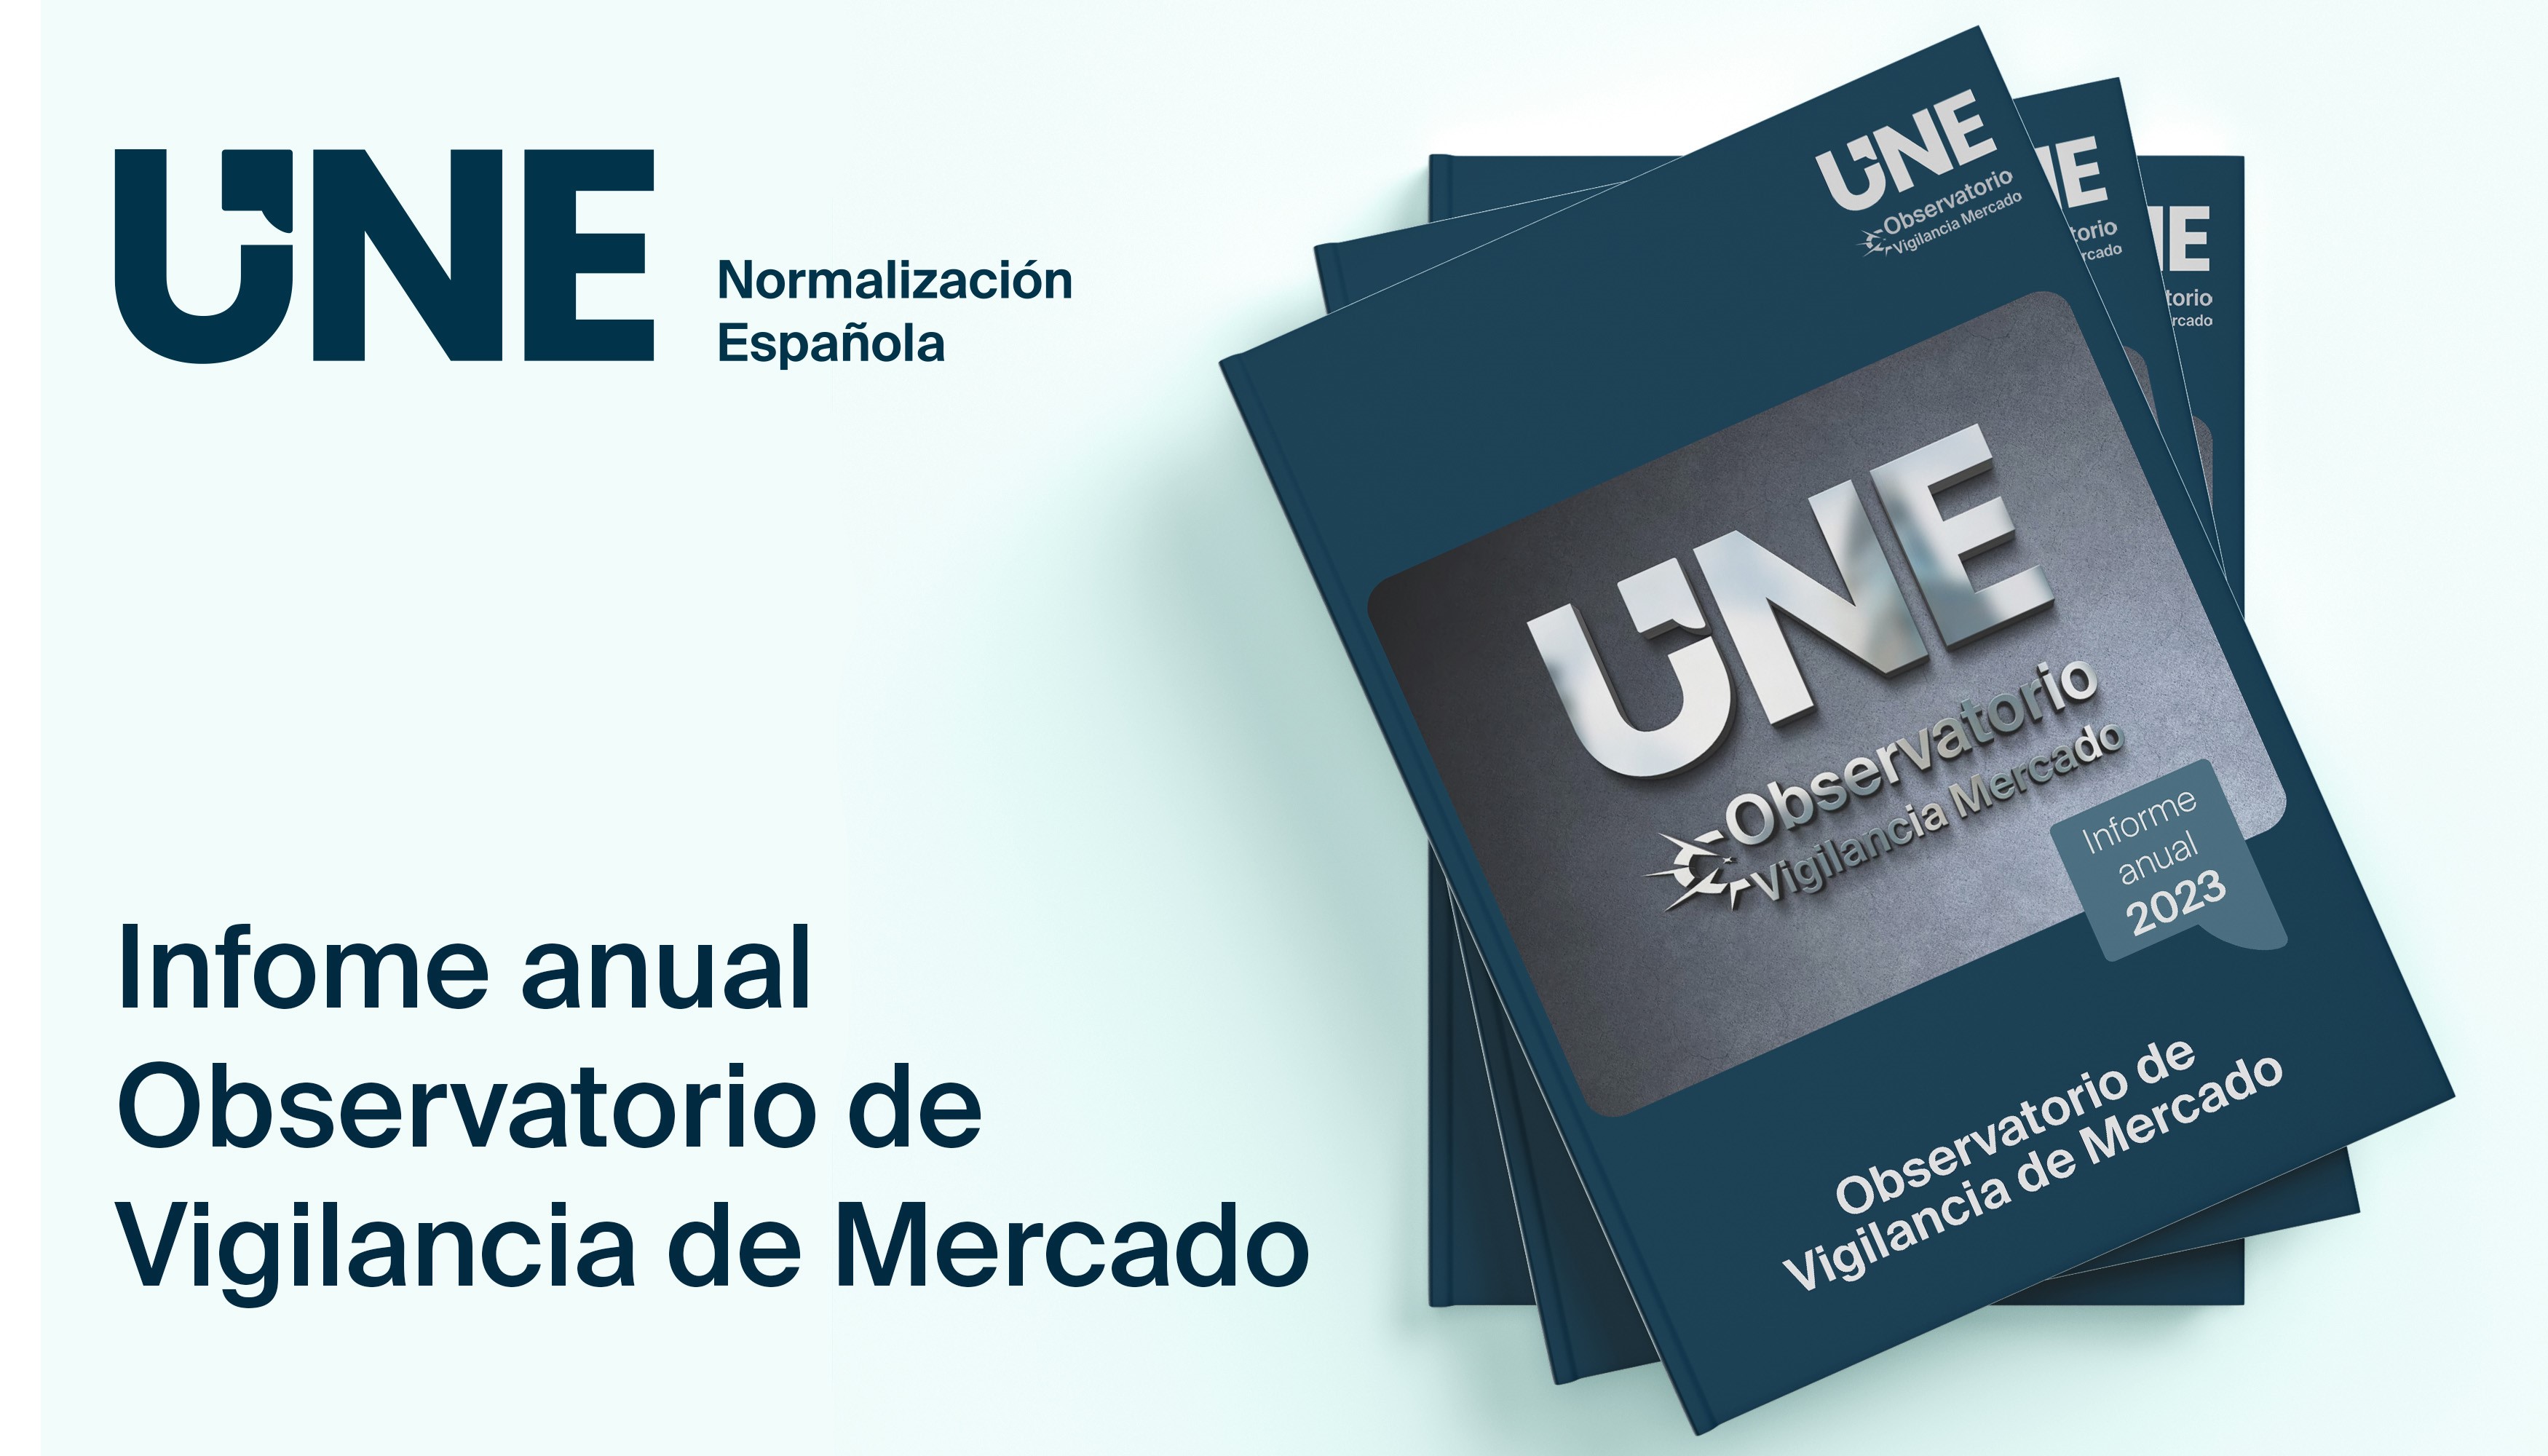 UNE publica su tercer informe anual de vigilancia de mercado